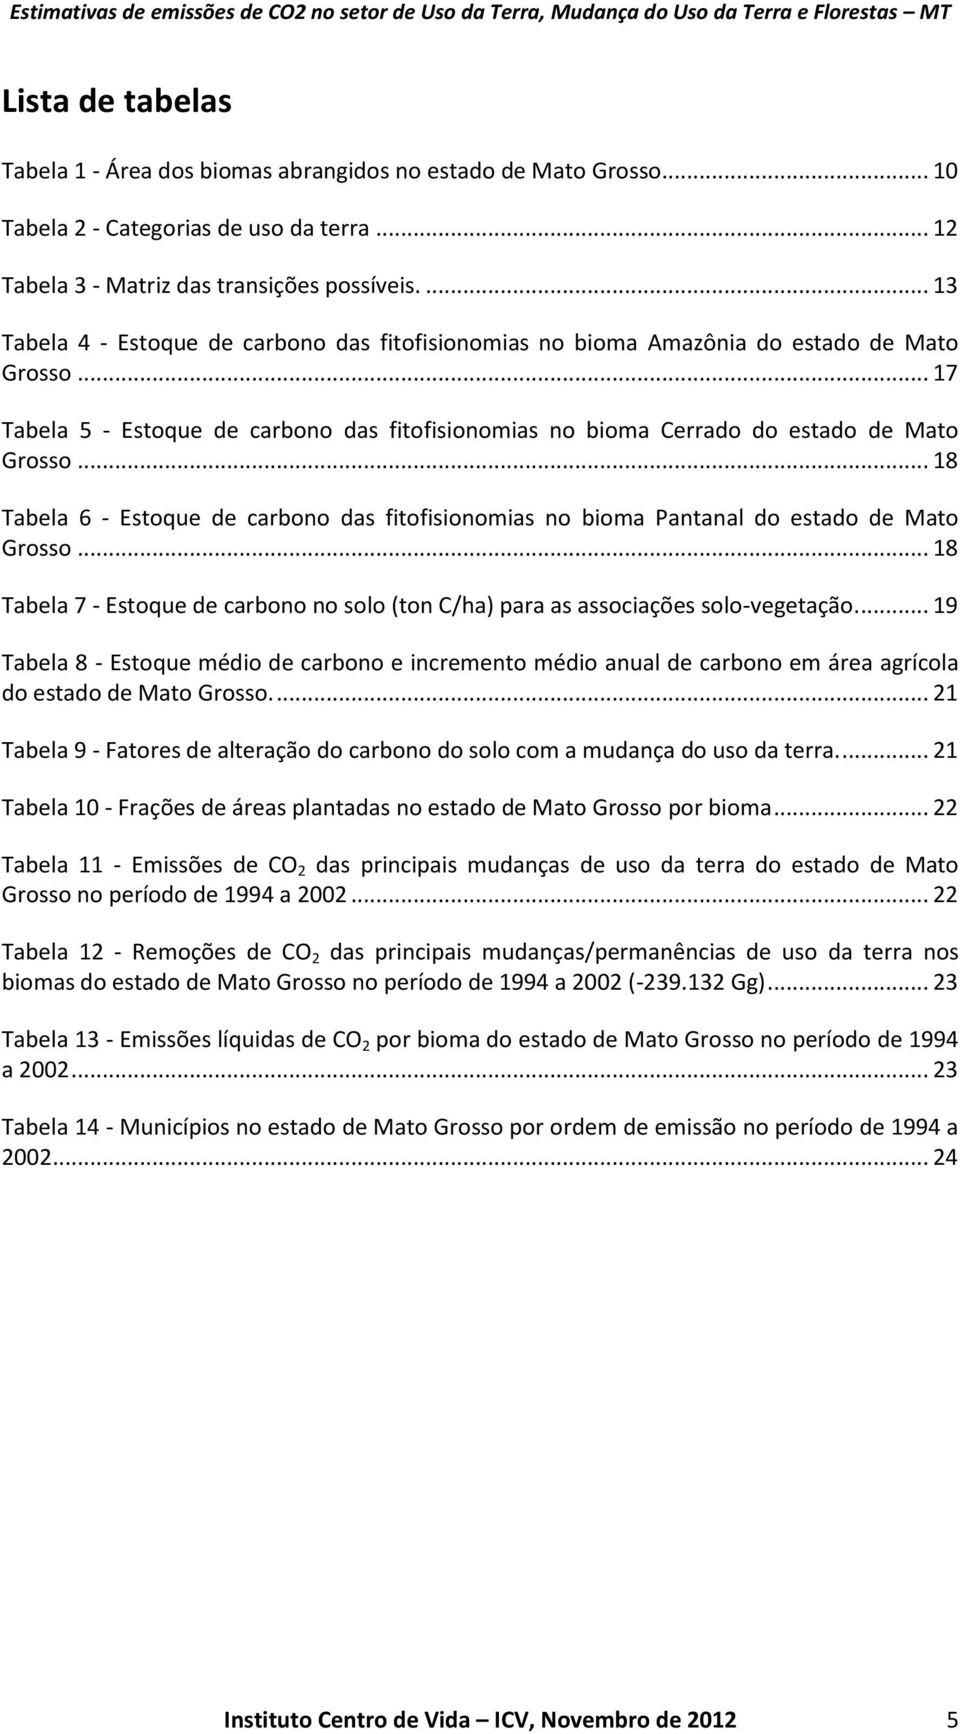 .. 18 Tabela 6 - Estoque de carbono das fitofisionomias no bioma Pantanal do estado de Mato Grosso... 18 Tabela 7 - Estoque de carbono no solo (ton C/ha) para as associações solo-vegetação.